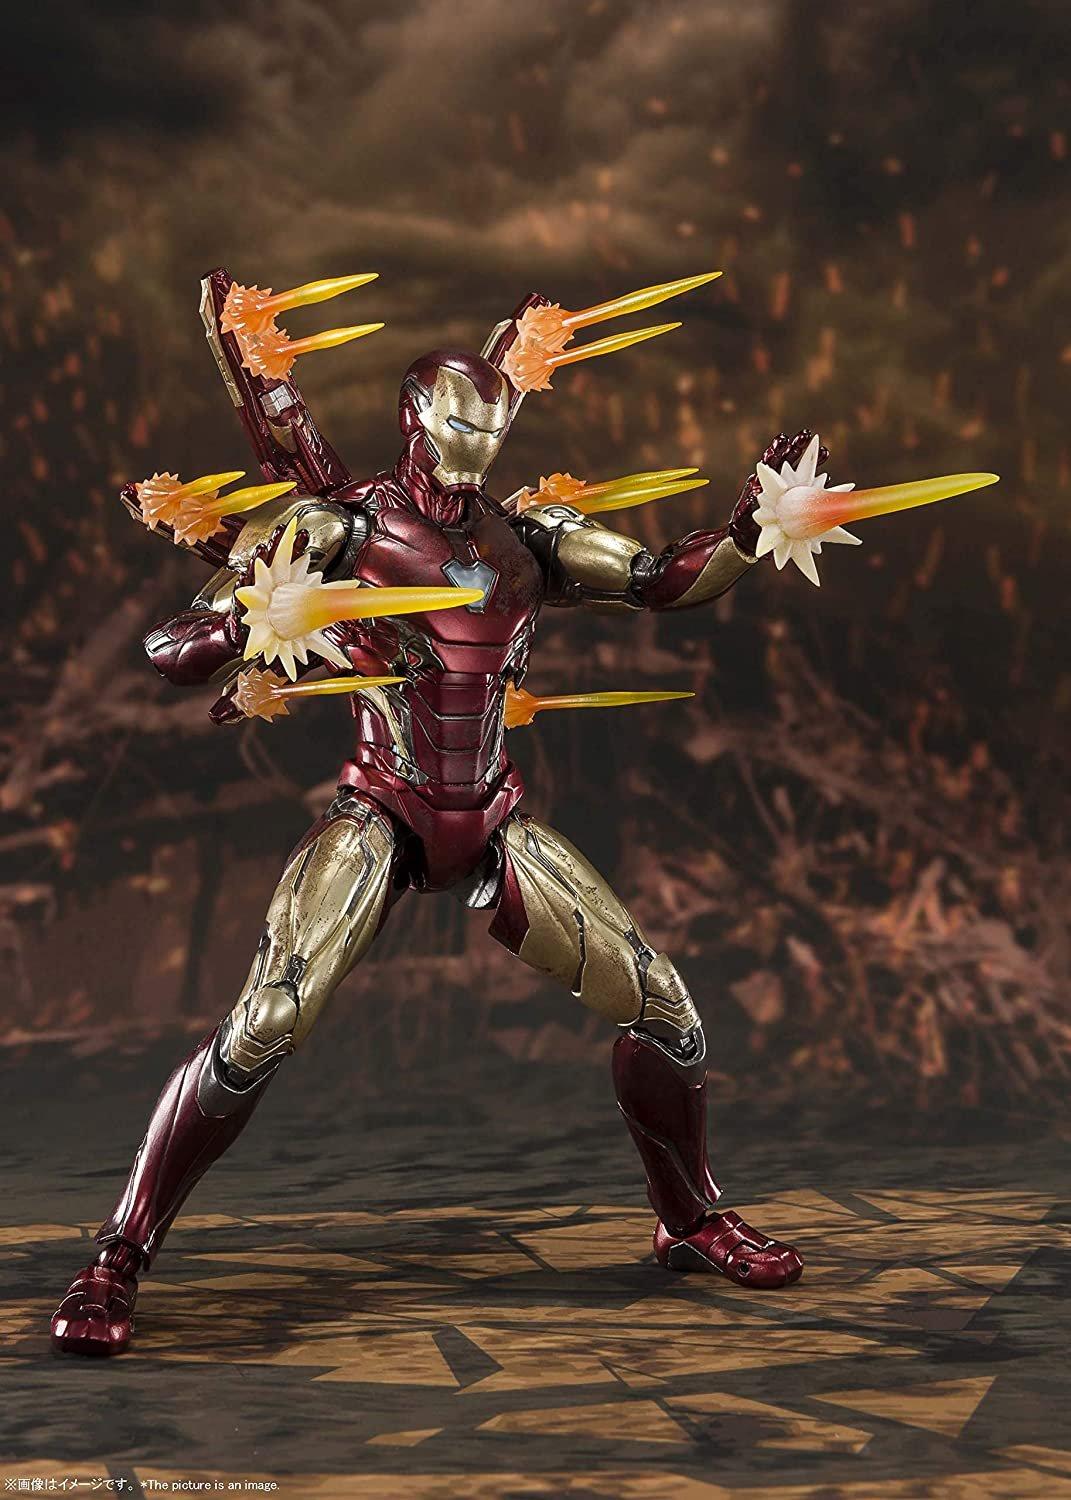 list item 4 of 4 Avengers: Endgame Iron Man Mark 85 Final Battle Edition S.H. Figuarts Action Figure